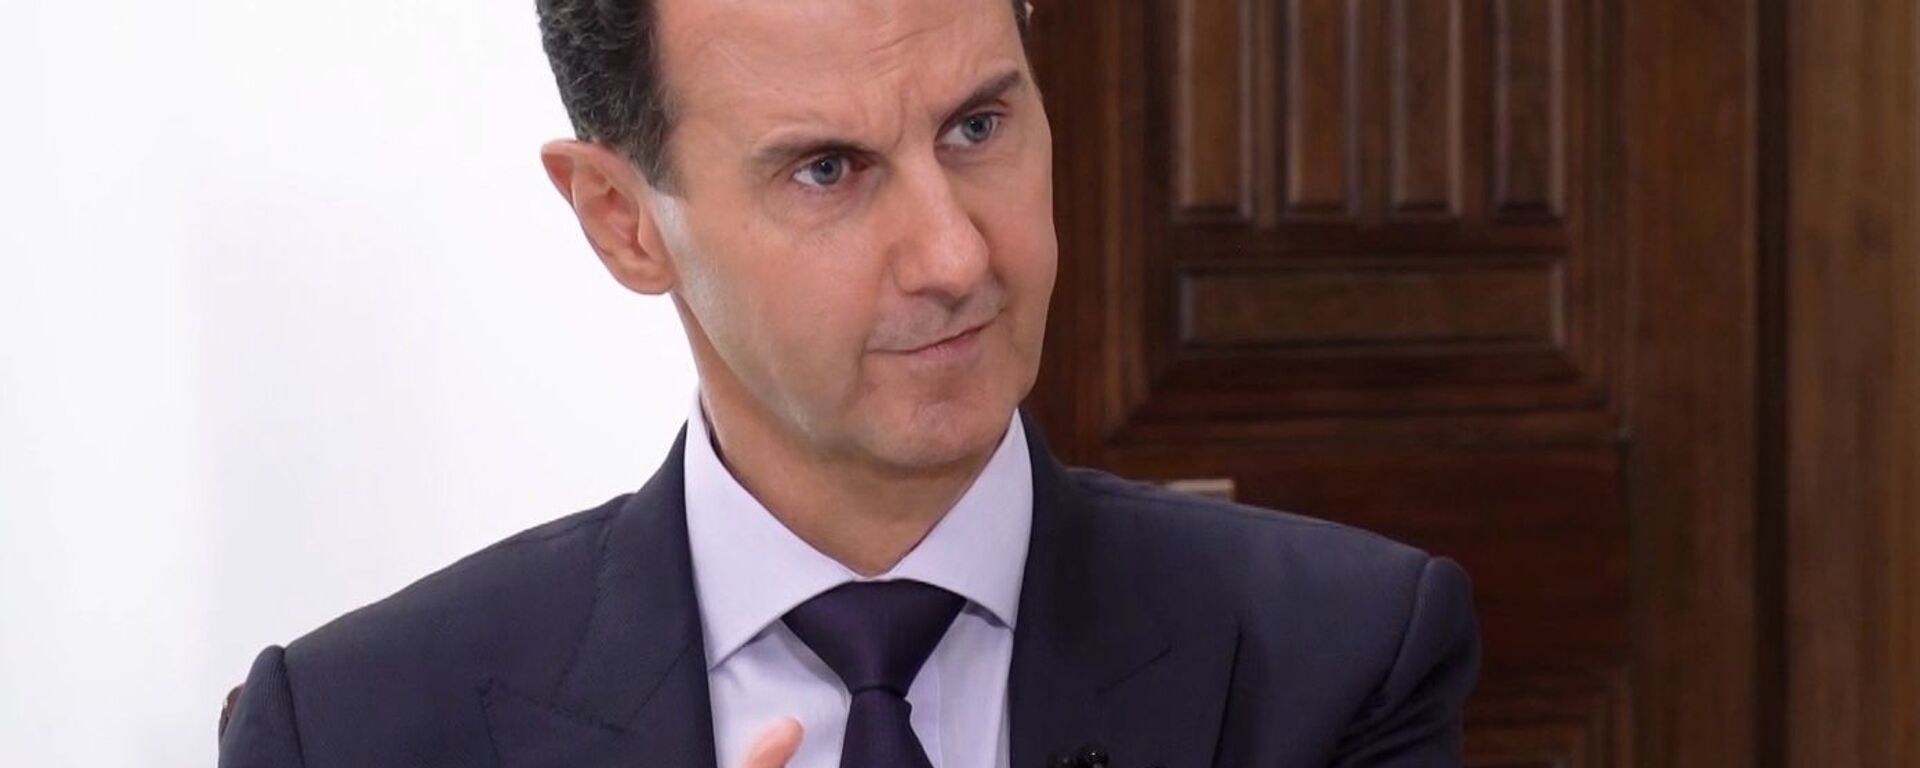 بشار اسد در مصاحبه با اسپوتنیک: جنگ در سوریه هنوز پایان نیافته است - اسپوتنیک ایران  , 1920, 18.03.2022